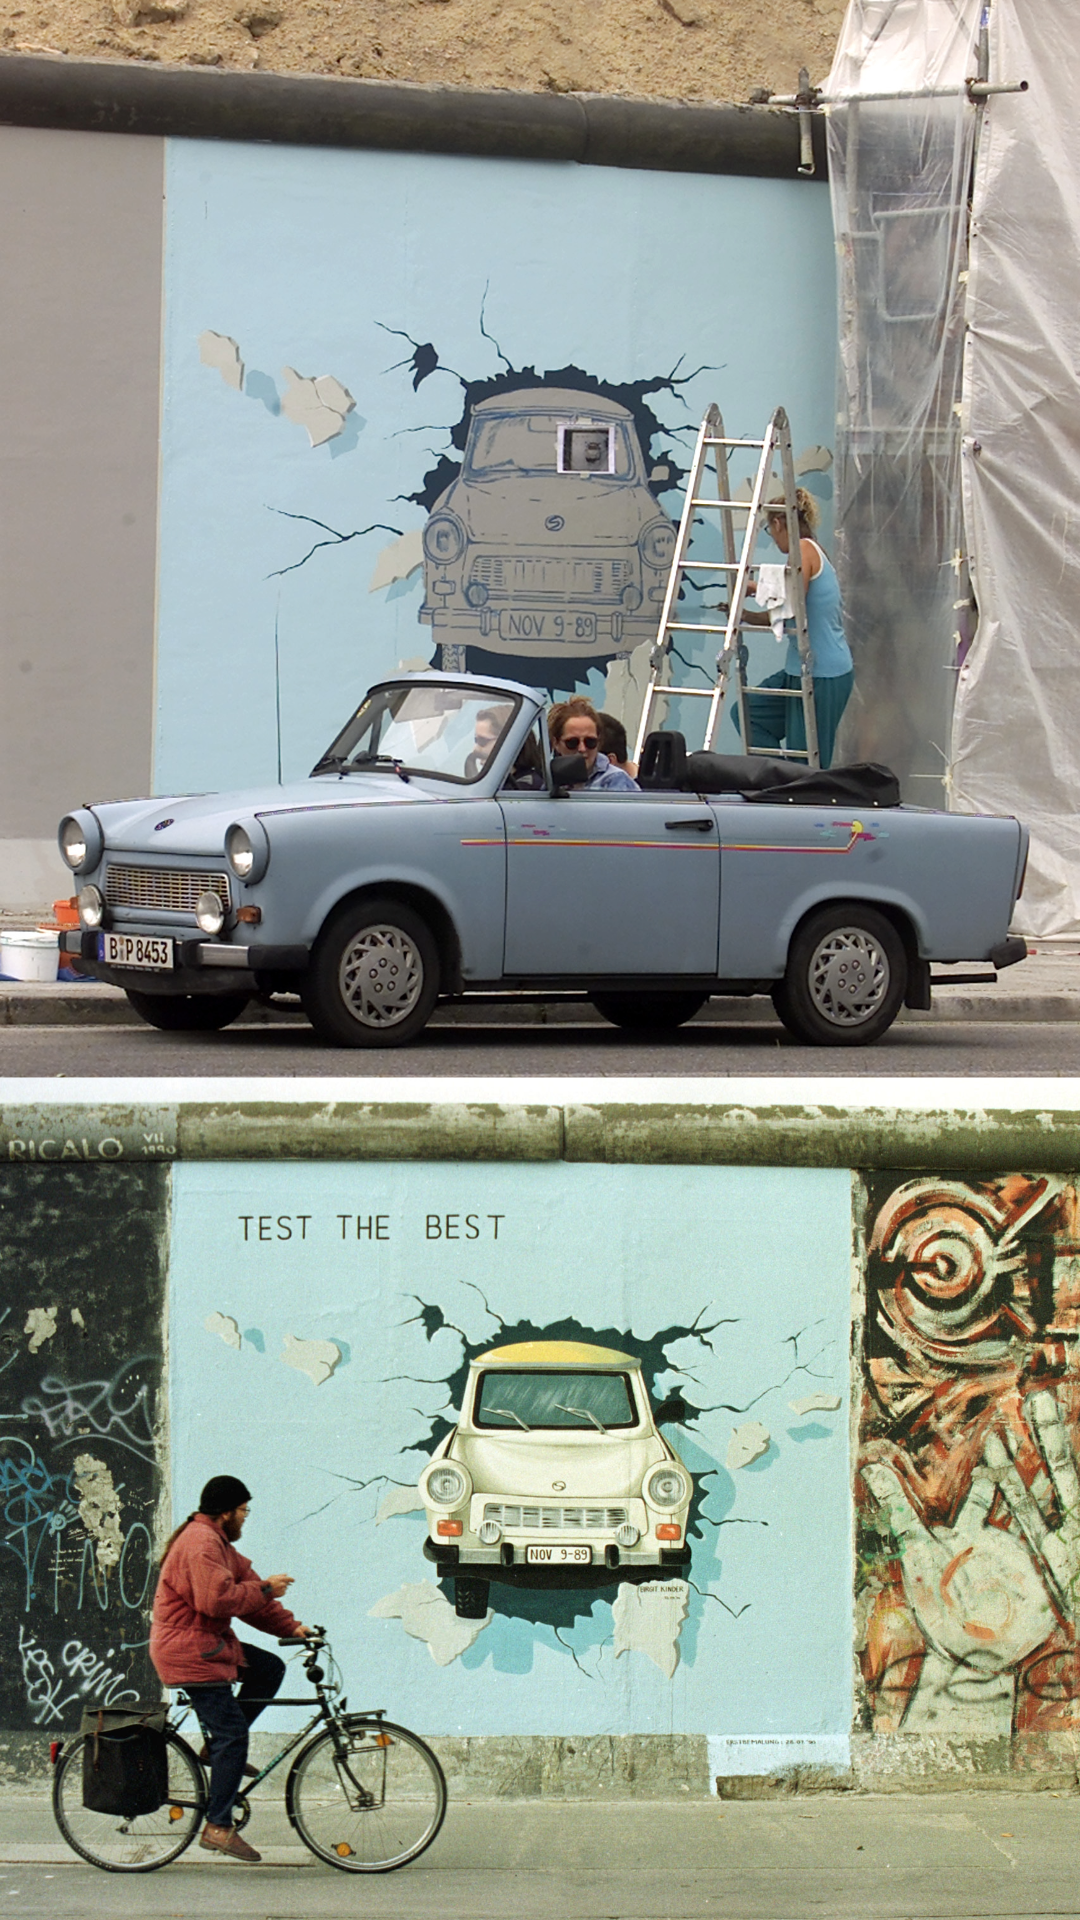 Die deutsche Künstlerin Birgit Kinder malt ein Graffiti des berühmten ostdeutschen Wagens Trabant, der die Berliner Mauer durchbricht. Dieses Gemälde findet man nun am größten verbliebenen Teil der Mauer, einem kilometerlangen Abschnitt, der East Side Gallery genannt wird.